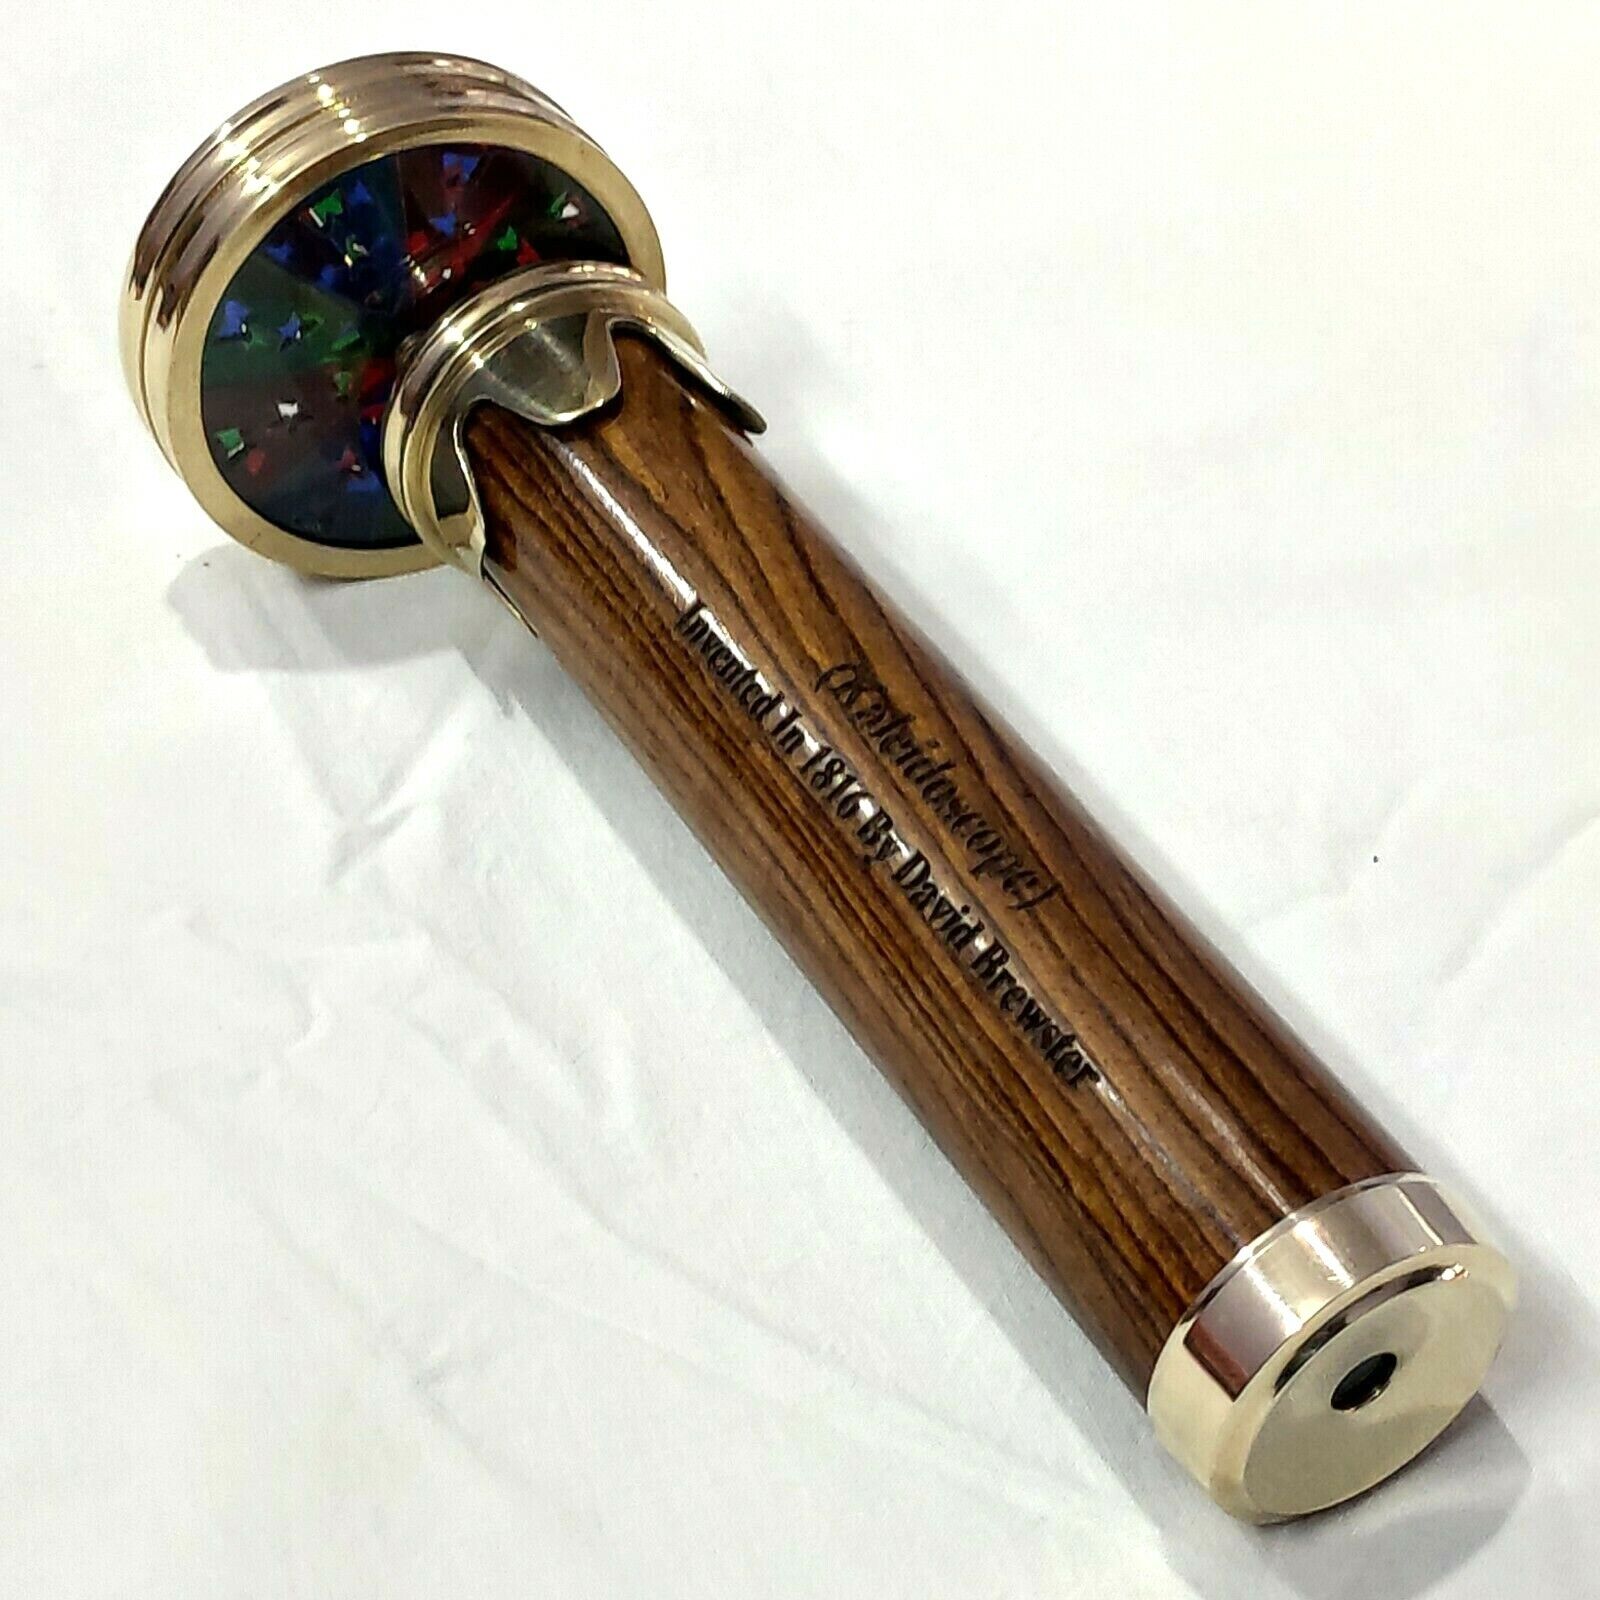 Brass wood Kaleidoscope Nautical Collectible gift